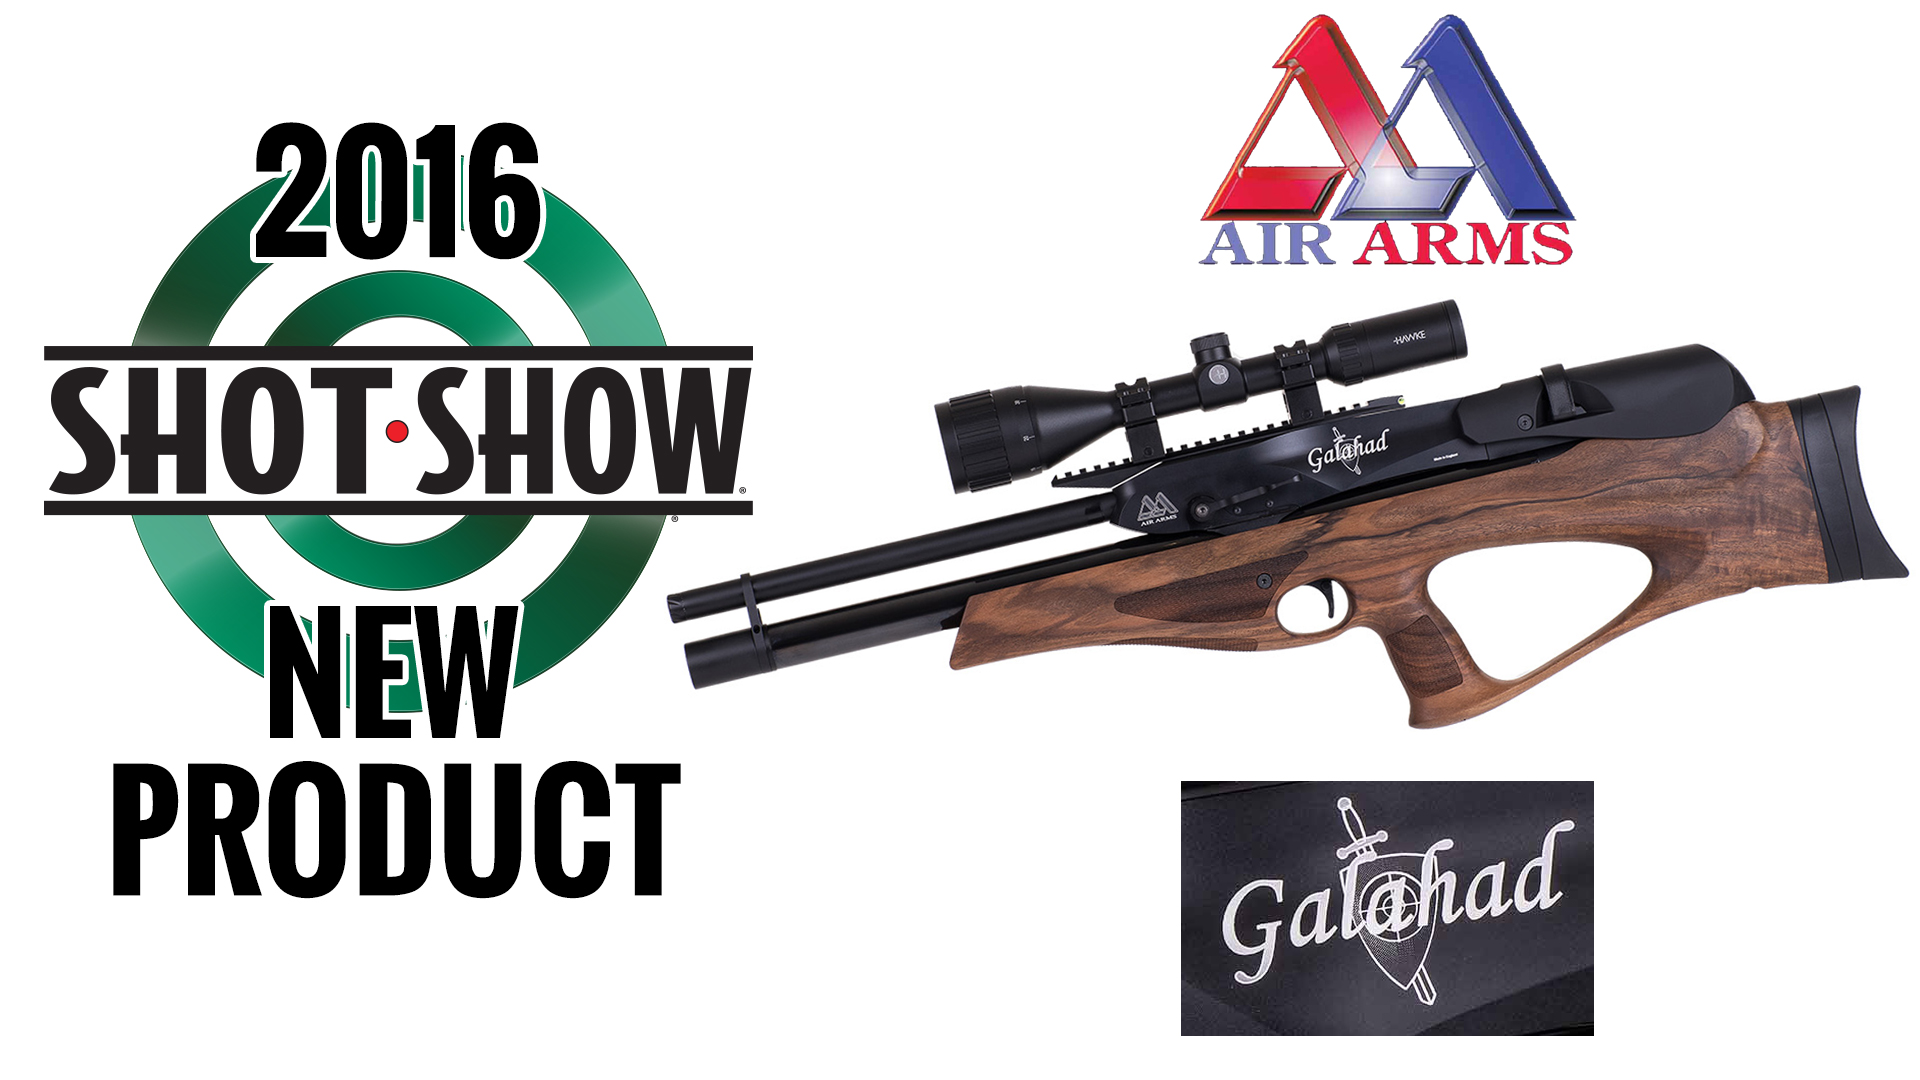 New Air Arms Galahad Air Rifles Announced